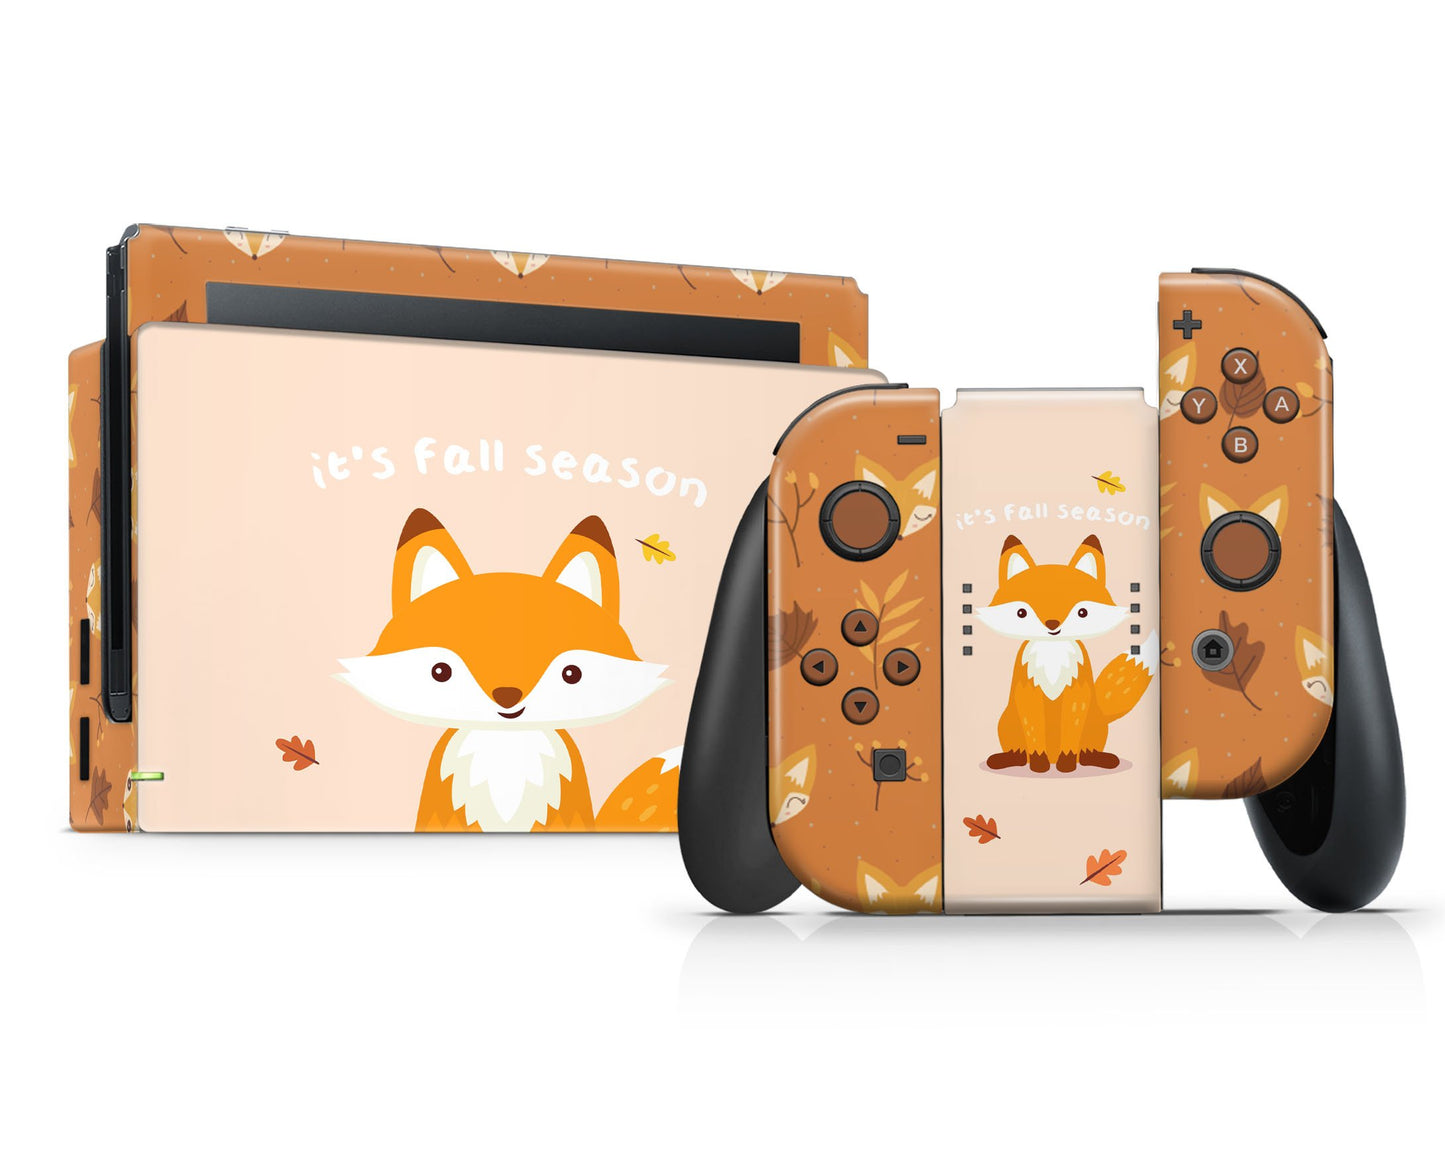 It's Fall Season Cute Fox Nintendo Switch Skin